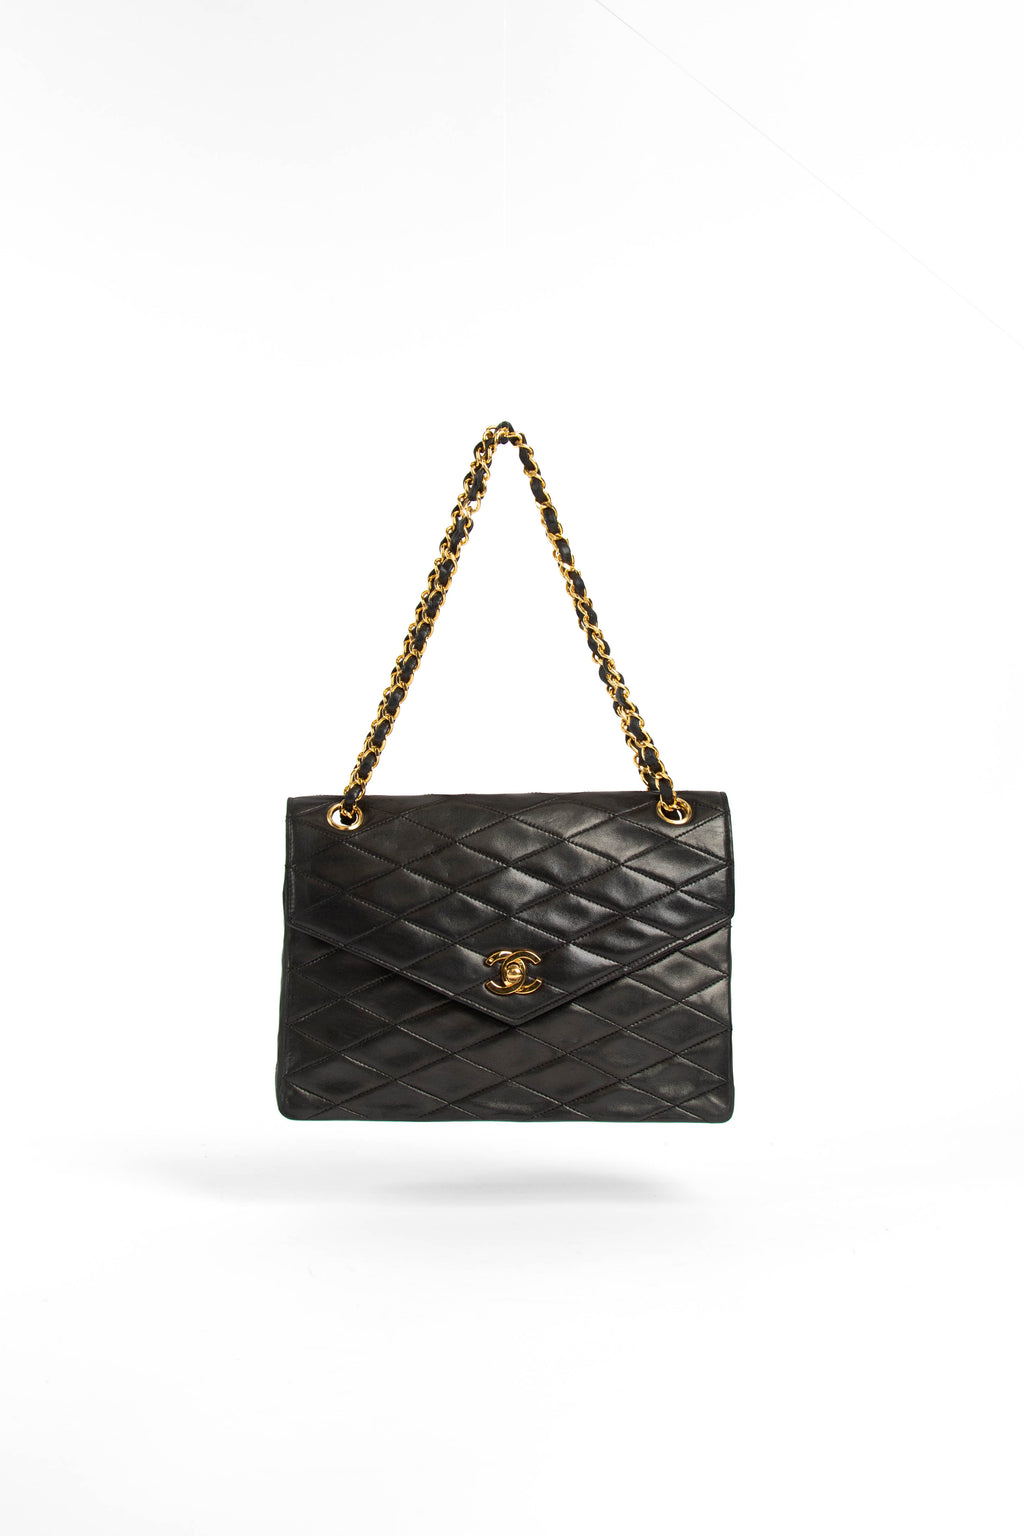 80s Chanel Black Lambskin Quilted Shoulder Bag